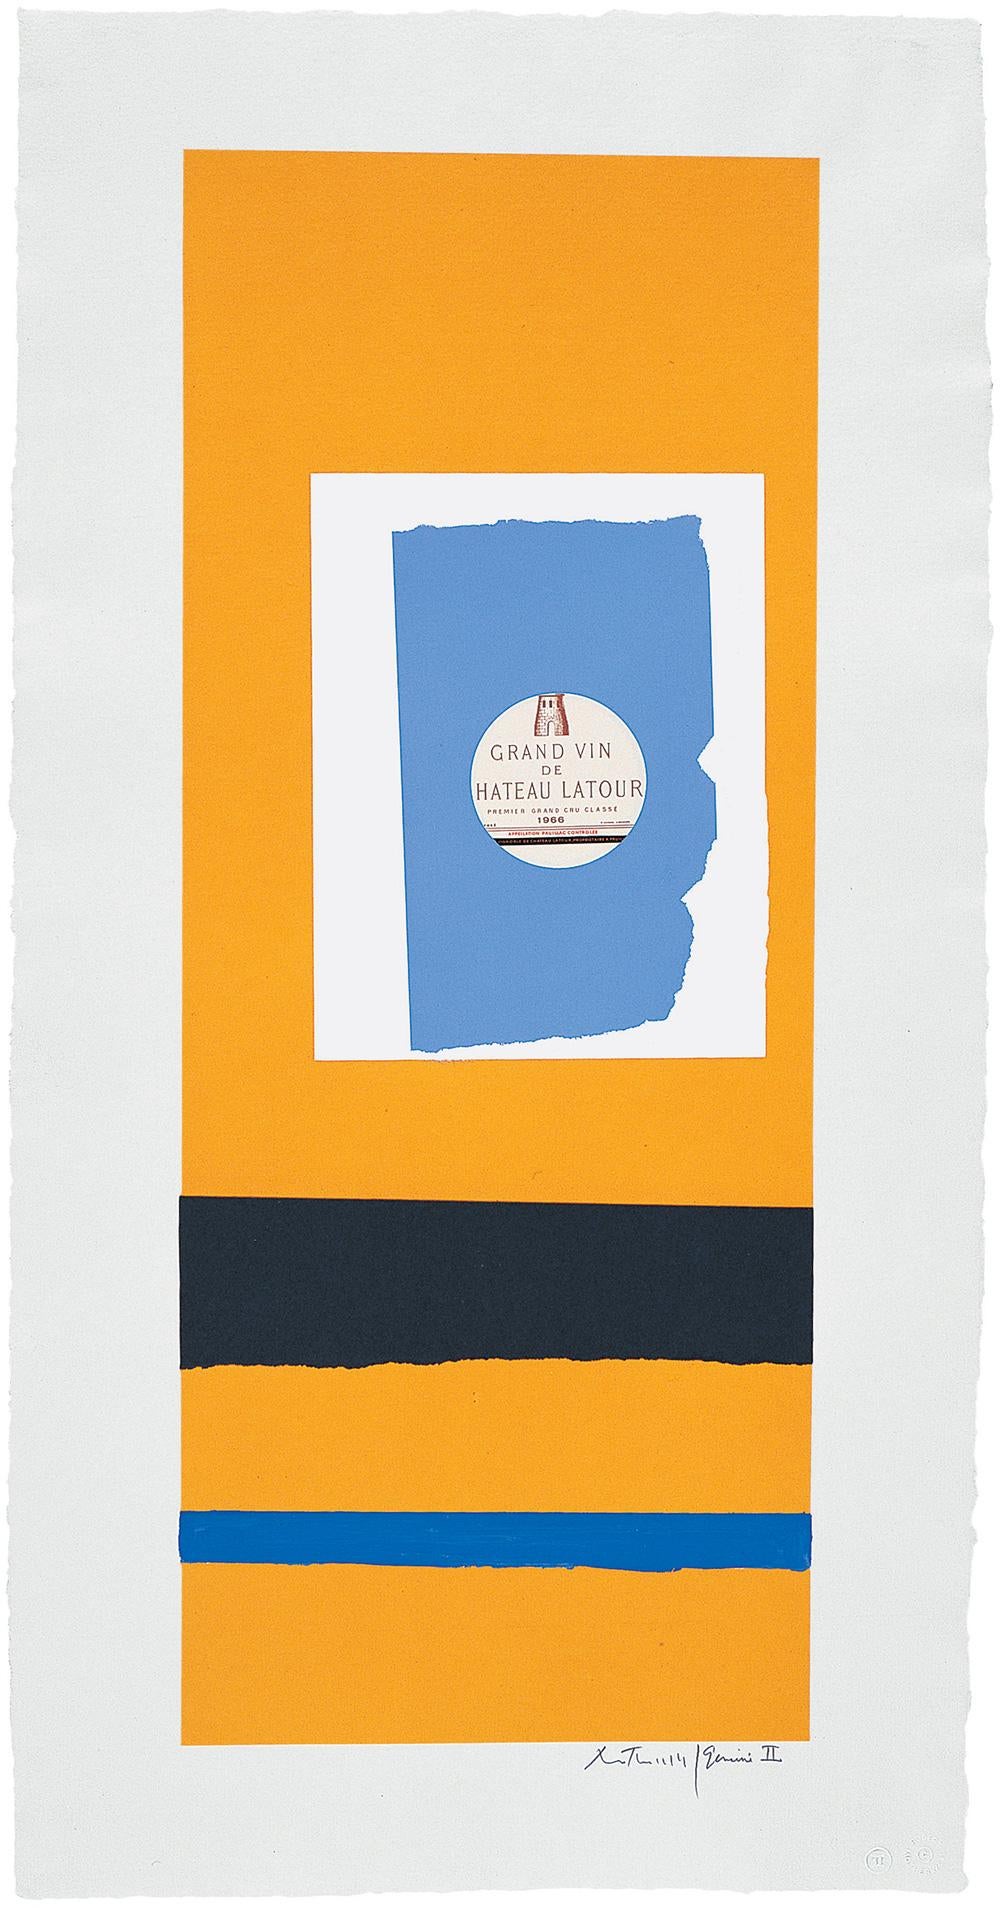 Robert Motherwell Abstract Print - Summer Light Series: Pauillac, No.2